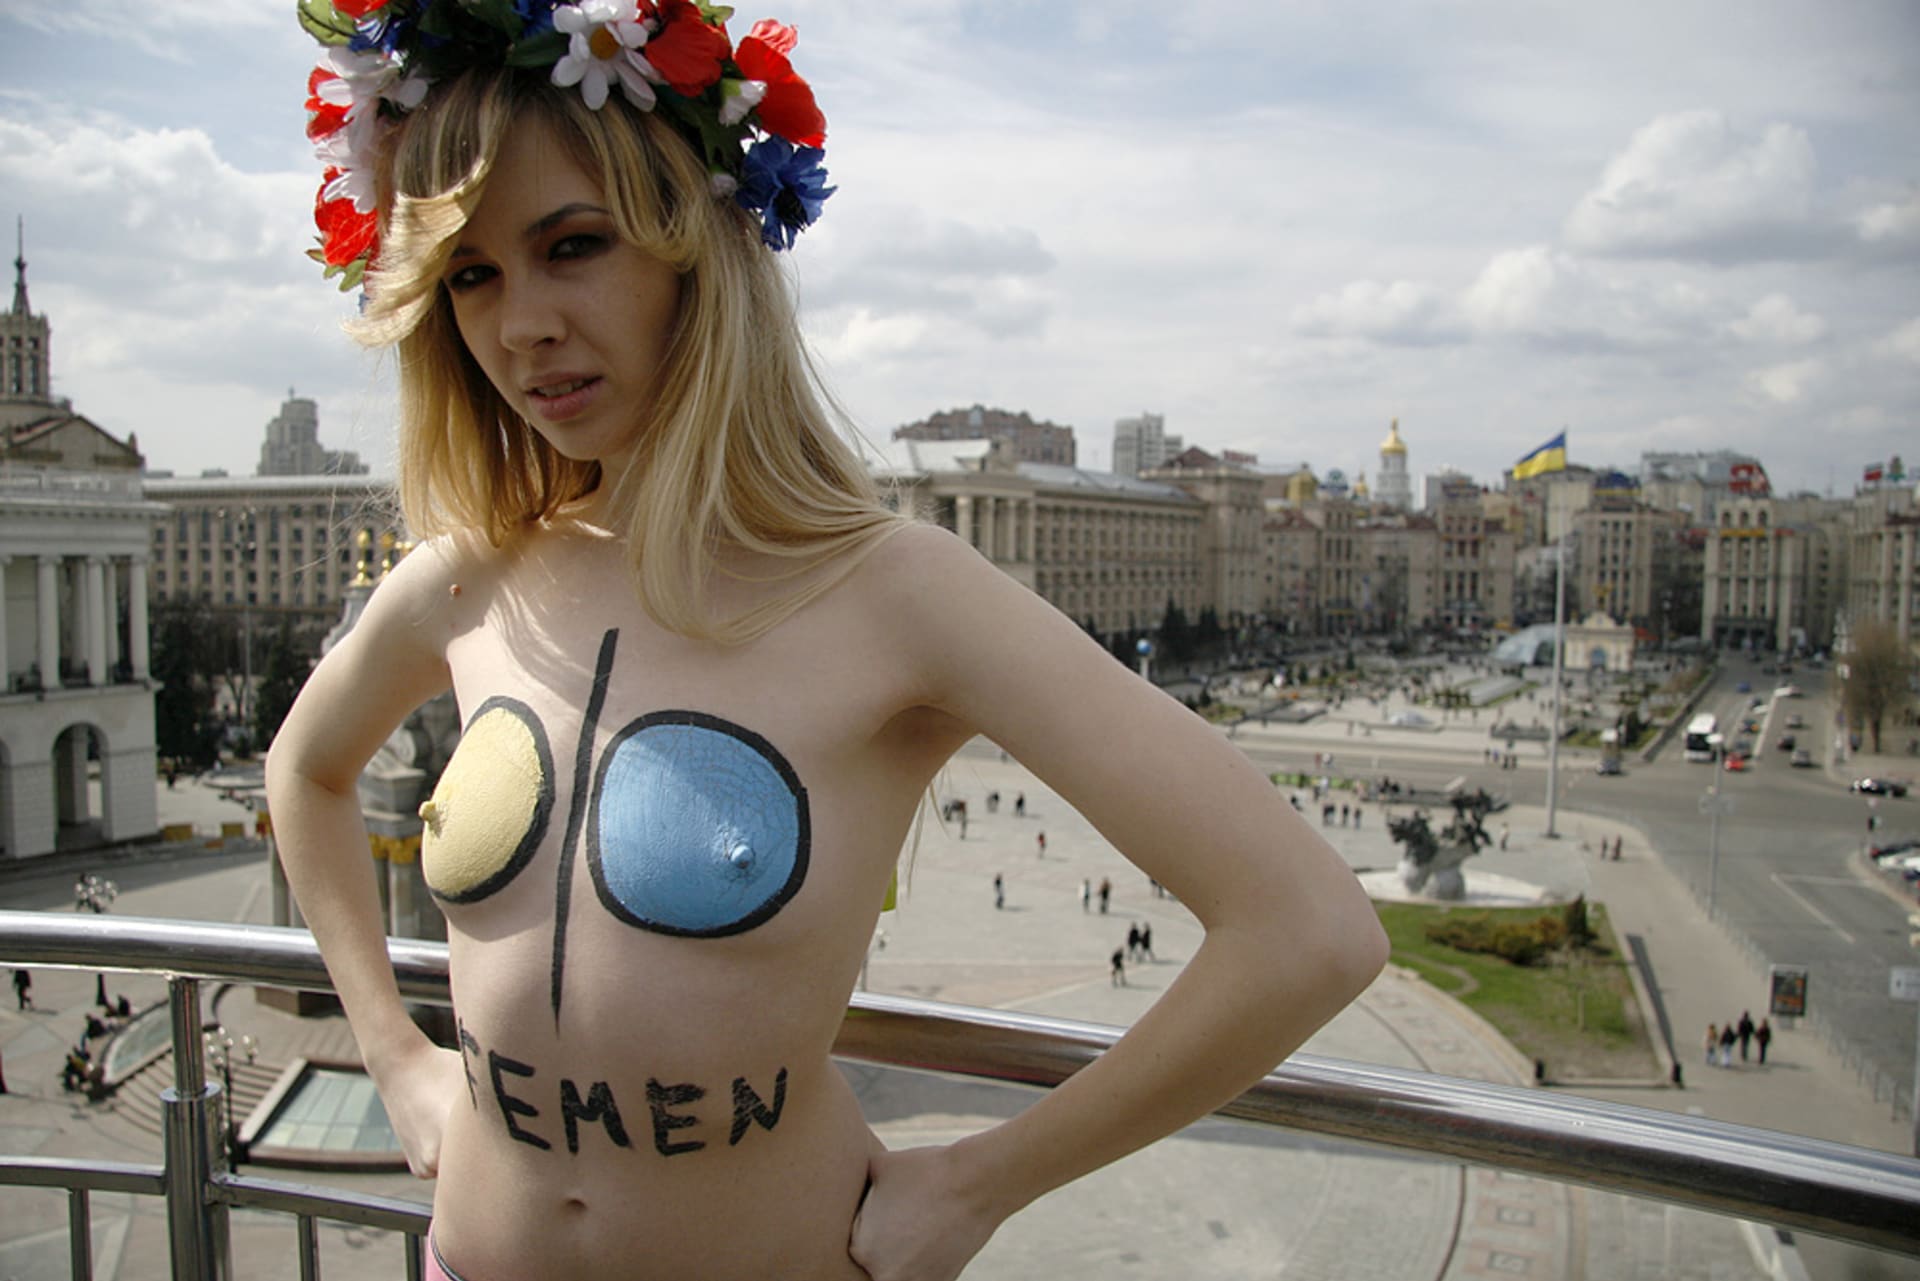 Organizace Femen